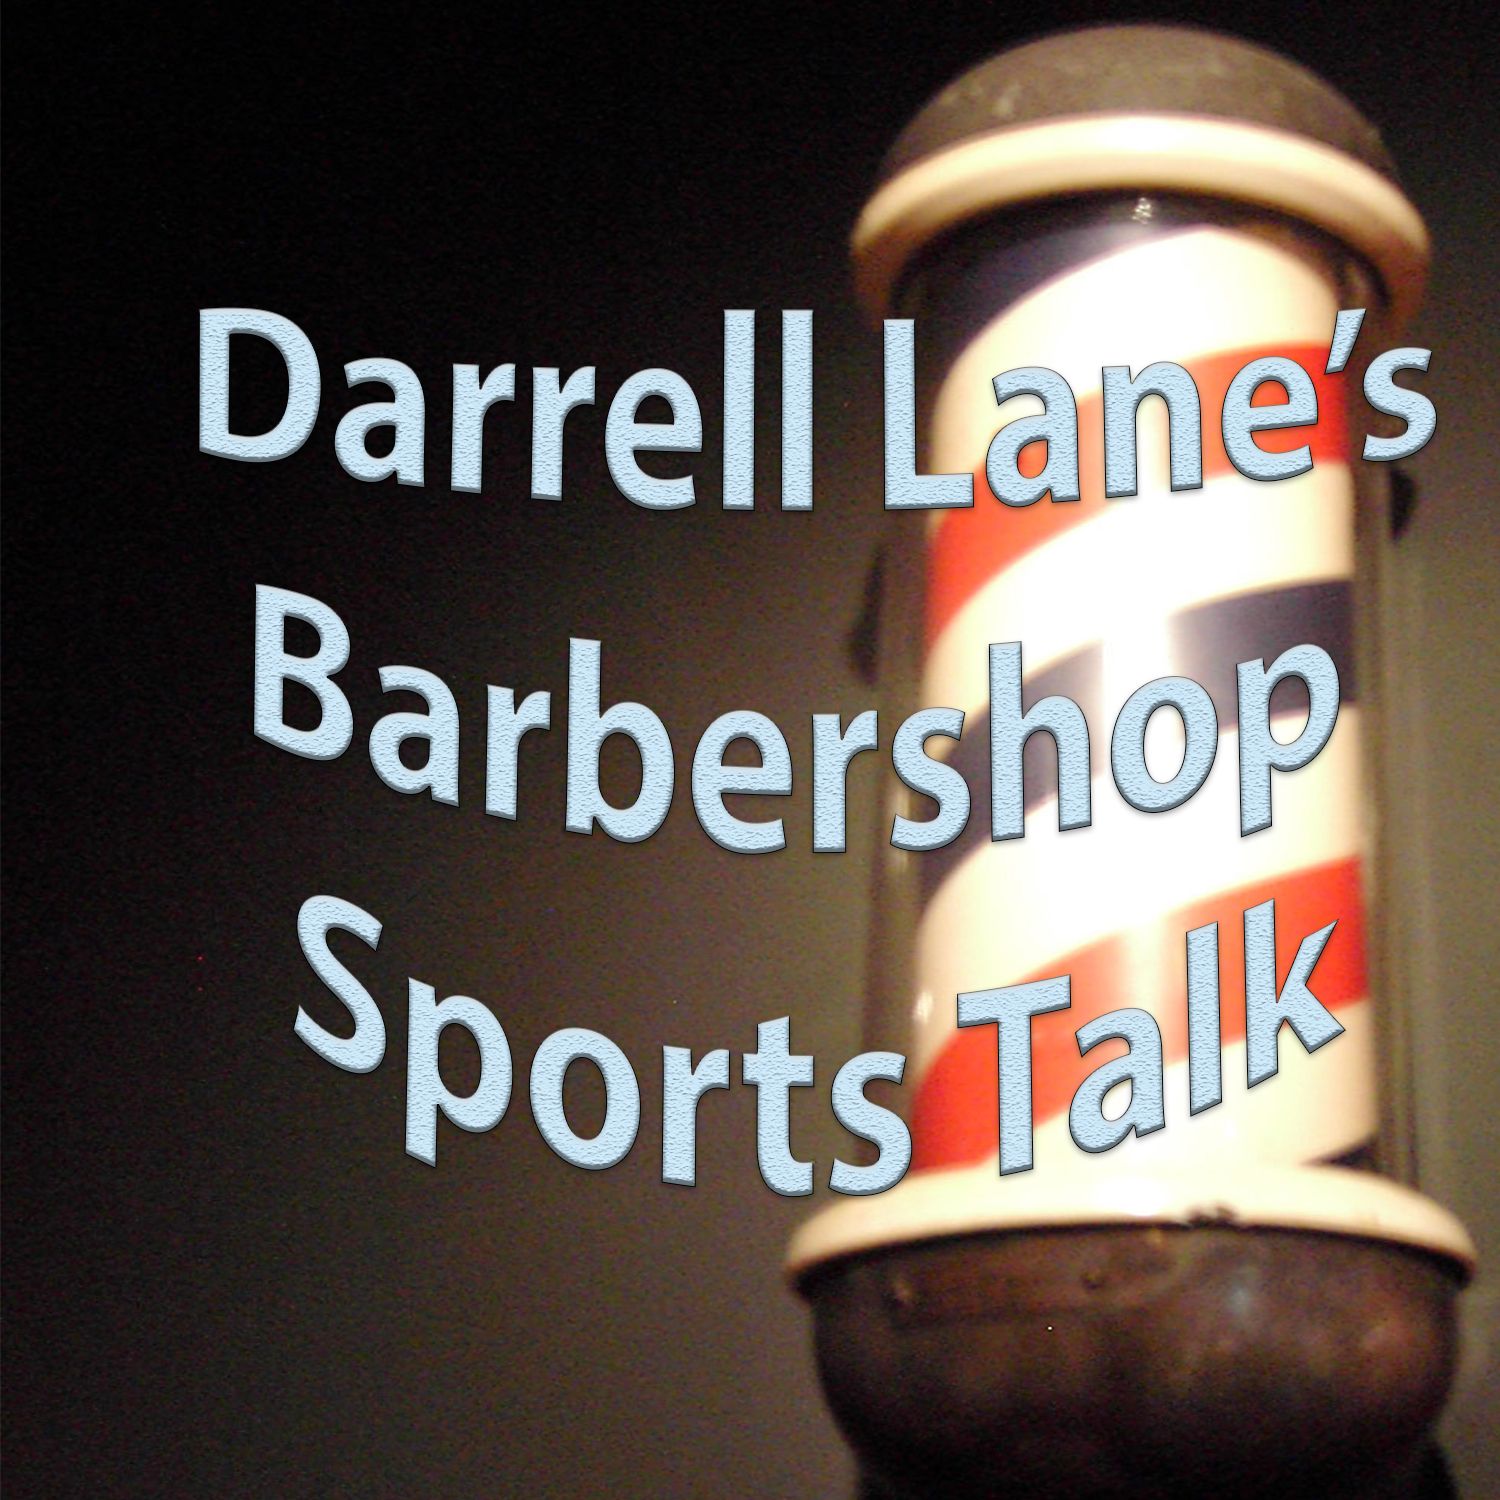 Barber Shop Sports Talk